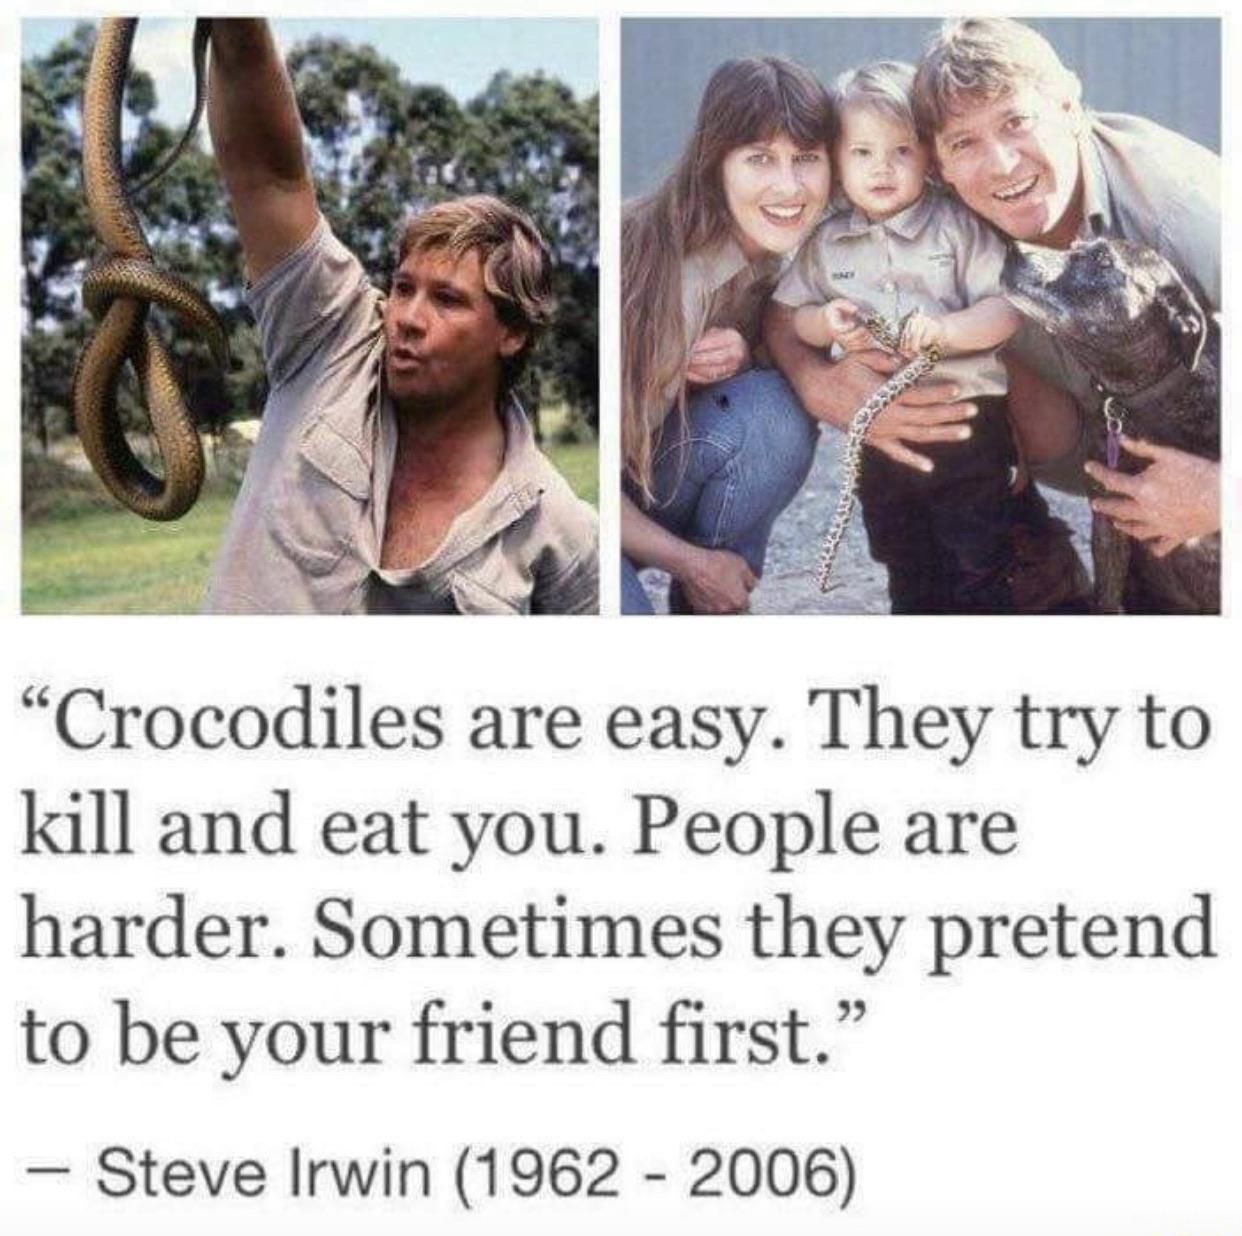 Good ol’ Steve Irwin